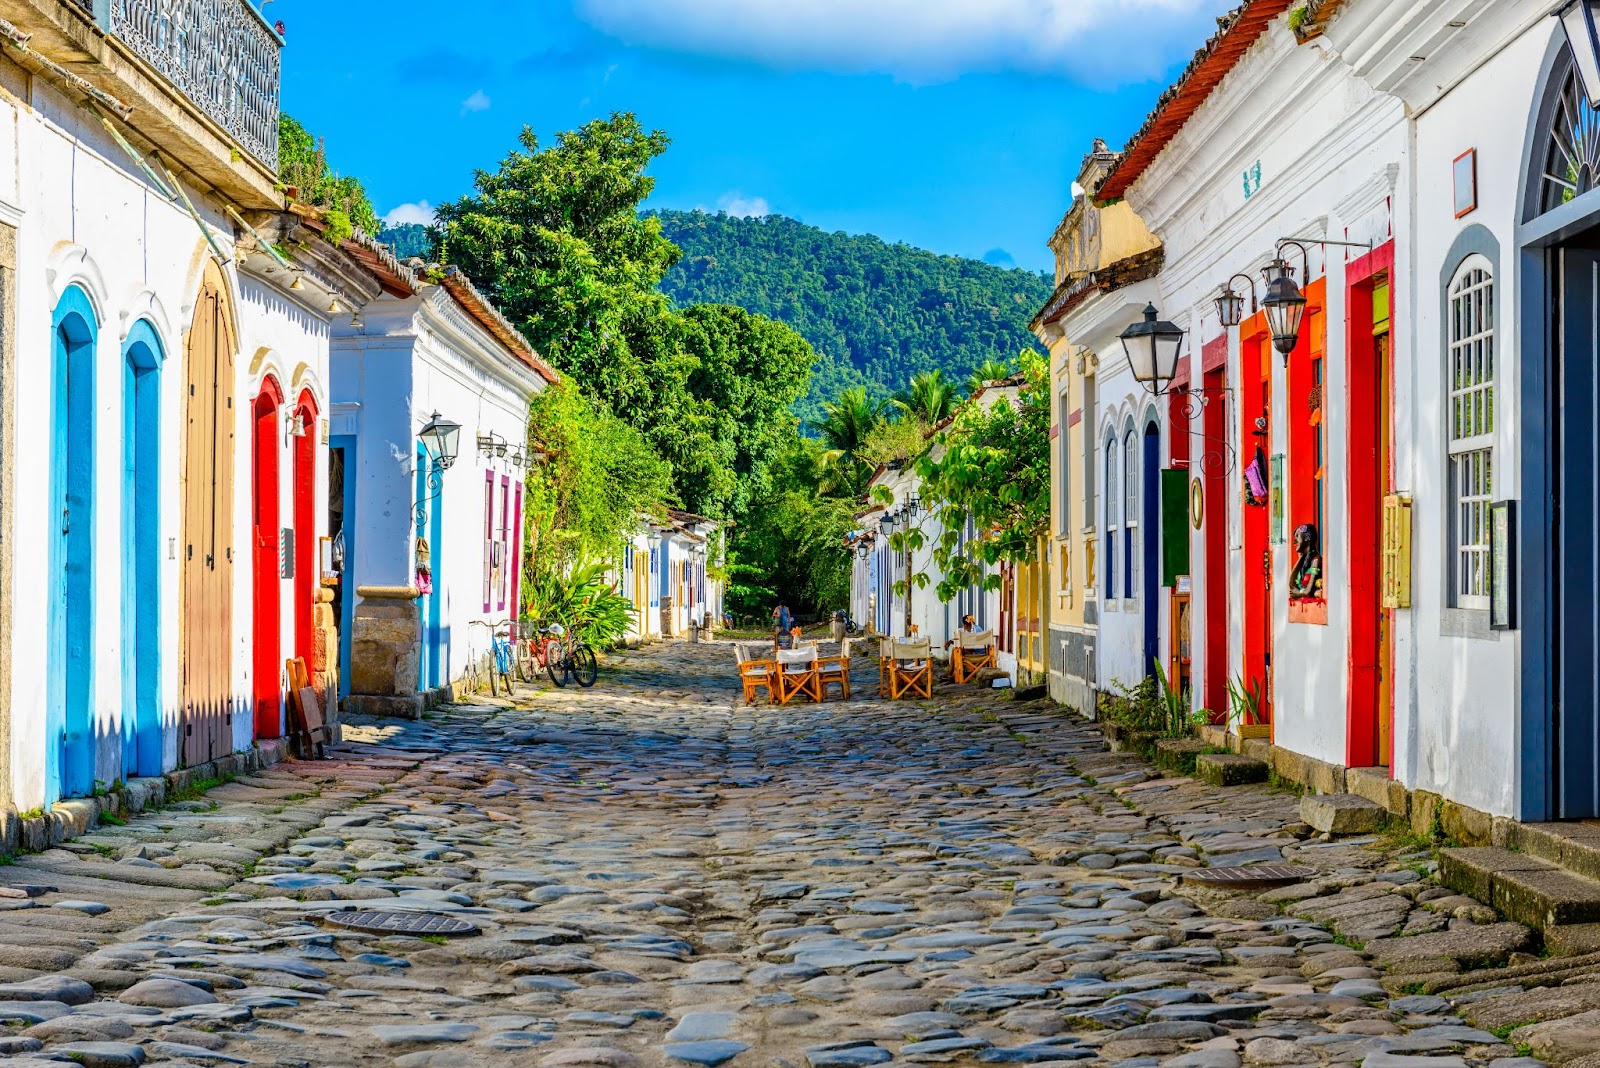 Rua do centro histórico de Paraty, com chão de paralelepípedo e casas coloniais brancas com detalhes em cores vivas como vermelho e azul. Ao horizonte, o verde da vegetação e da montanha fazem contraste com as cores